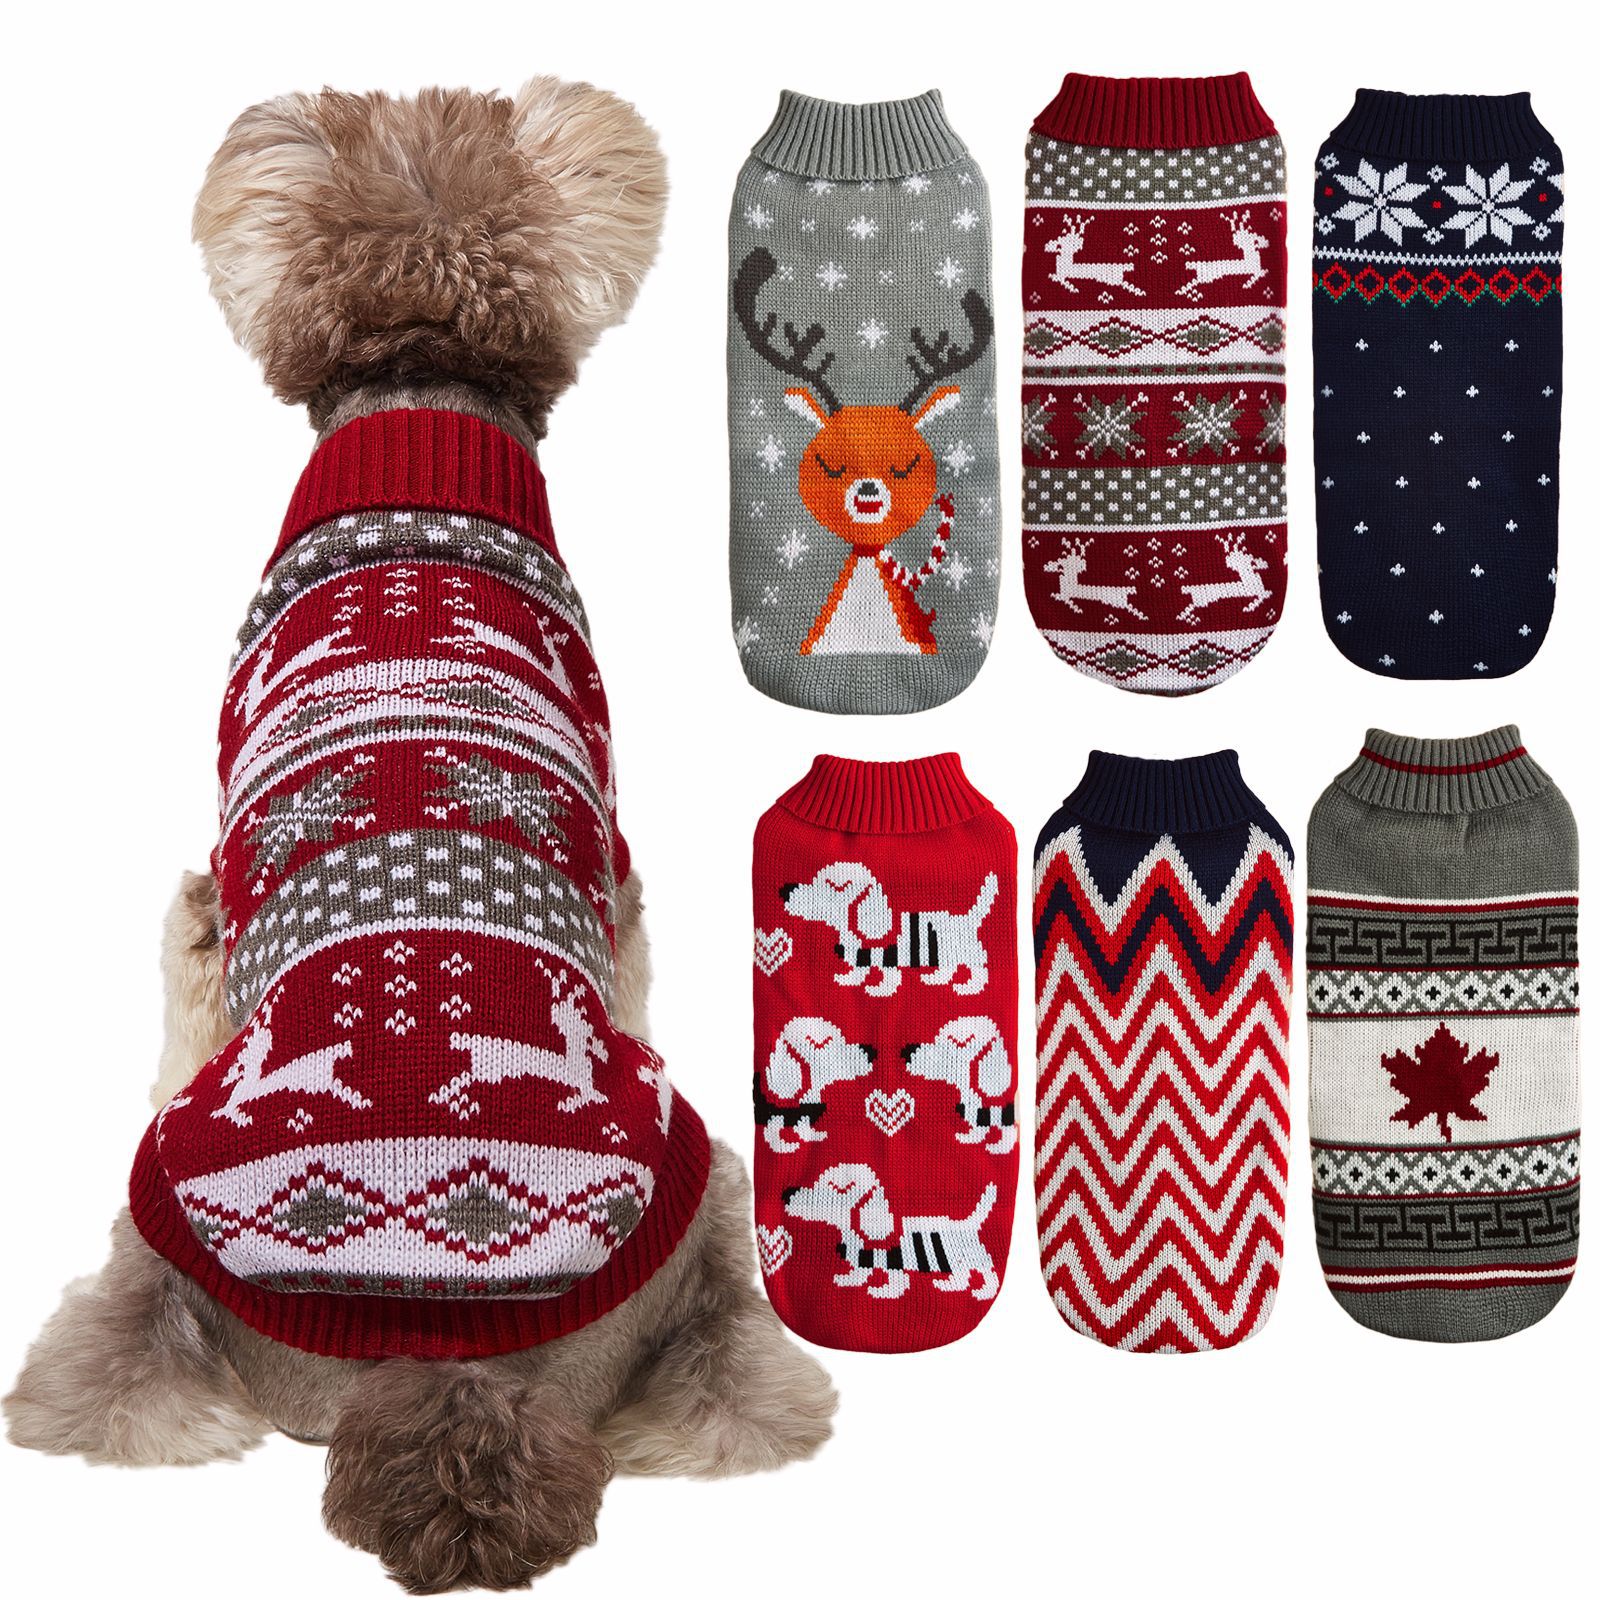 犬服 ペット服　セーター ニットセーター 秋冬服 防寒 暖かい ドッグウェア クリスマス ハロウィン 可愛い おしゃれ 小型犬 猫 非常にスタイリッシュで高品質のペットの服です "【秋冬季節の保温服】ニットセーターの素材は、柔らかで快適です。保温性に富み、これからの季節の暖かい犬服で、伸縮性が強くて着せやすくて動きやすい。【可愛いセーター】きれいな飾り、色が綺麗で、ペットはセーターを着て寒さを防ぐと同時に、可愛くておしゃれになります。クリスマス、ハロウィン、誕生日、写真を撮ります。変身服、コスプレ、プレゼントもいい選択です。【皮膚保護】寒くなる時期に愛犬の皮膚を保護するために、服を着くのはとても重要で、弊社の服を着くのはリラックスしている。 普段の飲食時や睡眠時、排泄時に邪魔にならず、散歩もストレスなく自由に行ける。【高品質の冬服】これは非常にスタイリッシュで高品質のペットの服です。ほとんどの中小型犬に適しています：チワワ、テディ、プードル、パピヨン、ポメラニアン、ヨークシャーテリア、ビションフリーゼ、フレンチブルドッグ、マルチーズ、コッカースパニエル、ビション・フリーゼなど。サイズは6種類。サイズ詳細をご覧ください。" 2